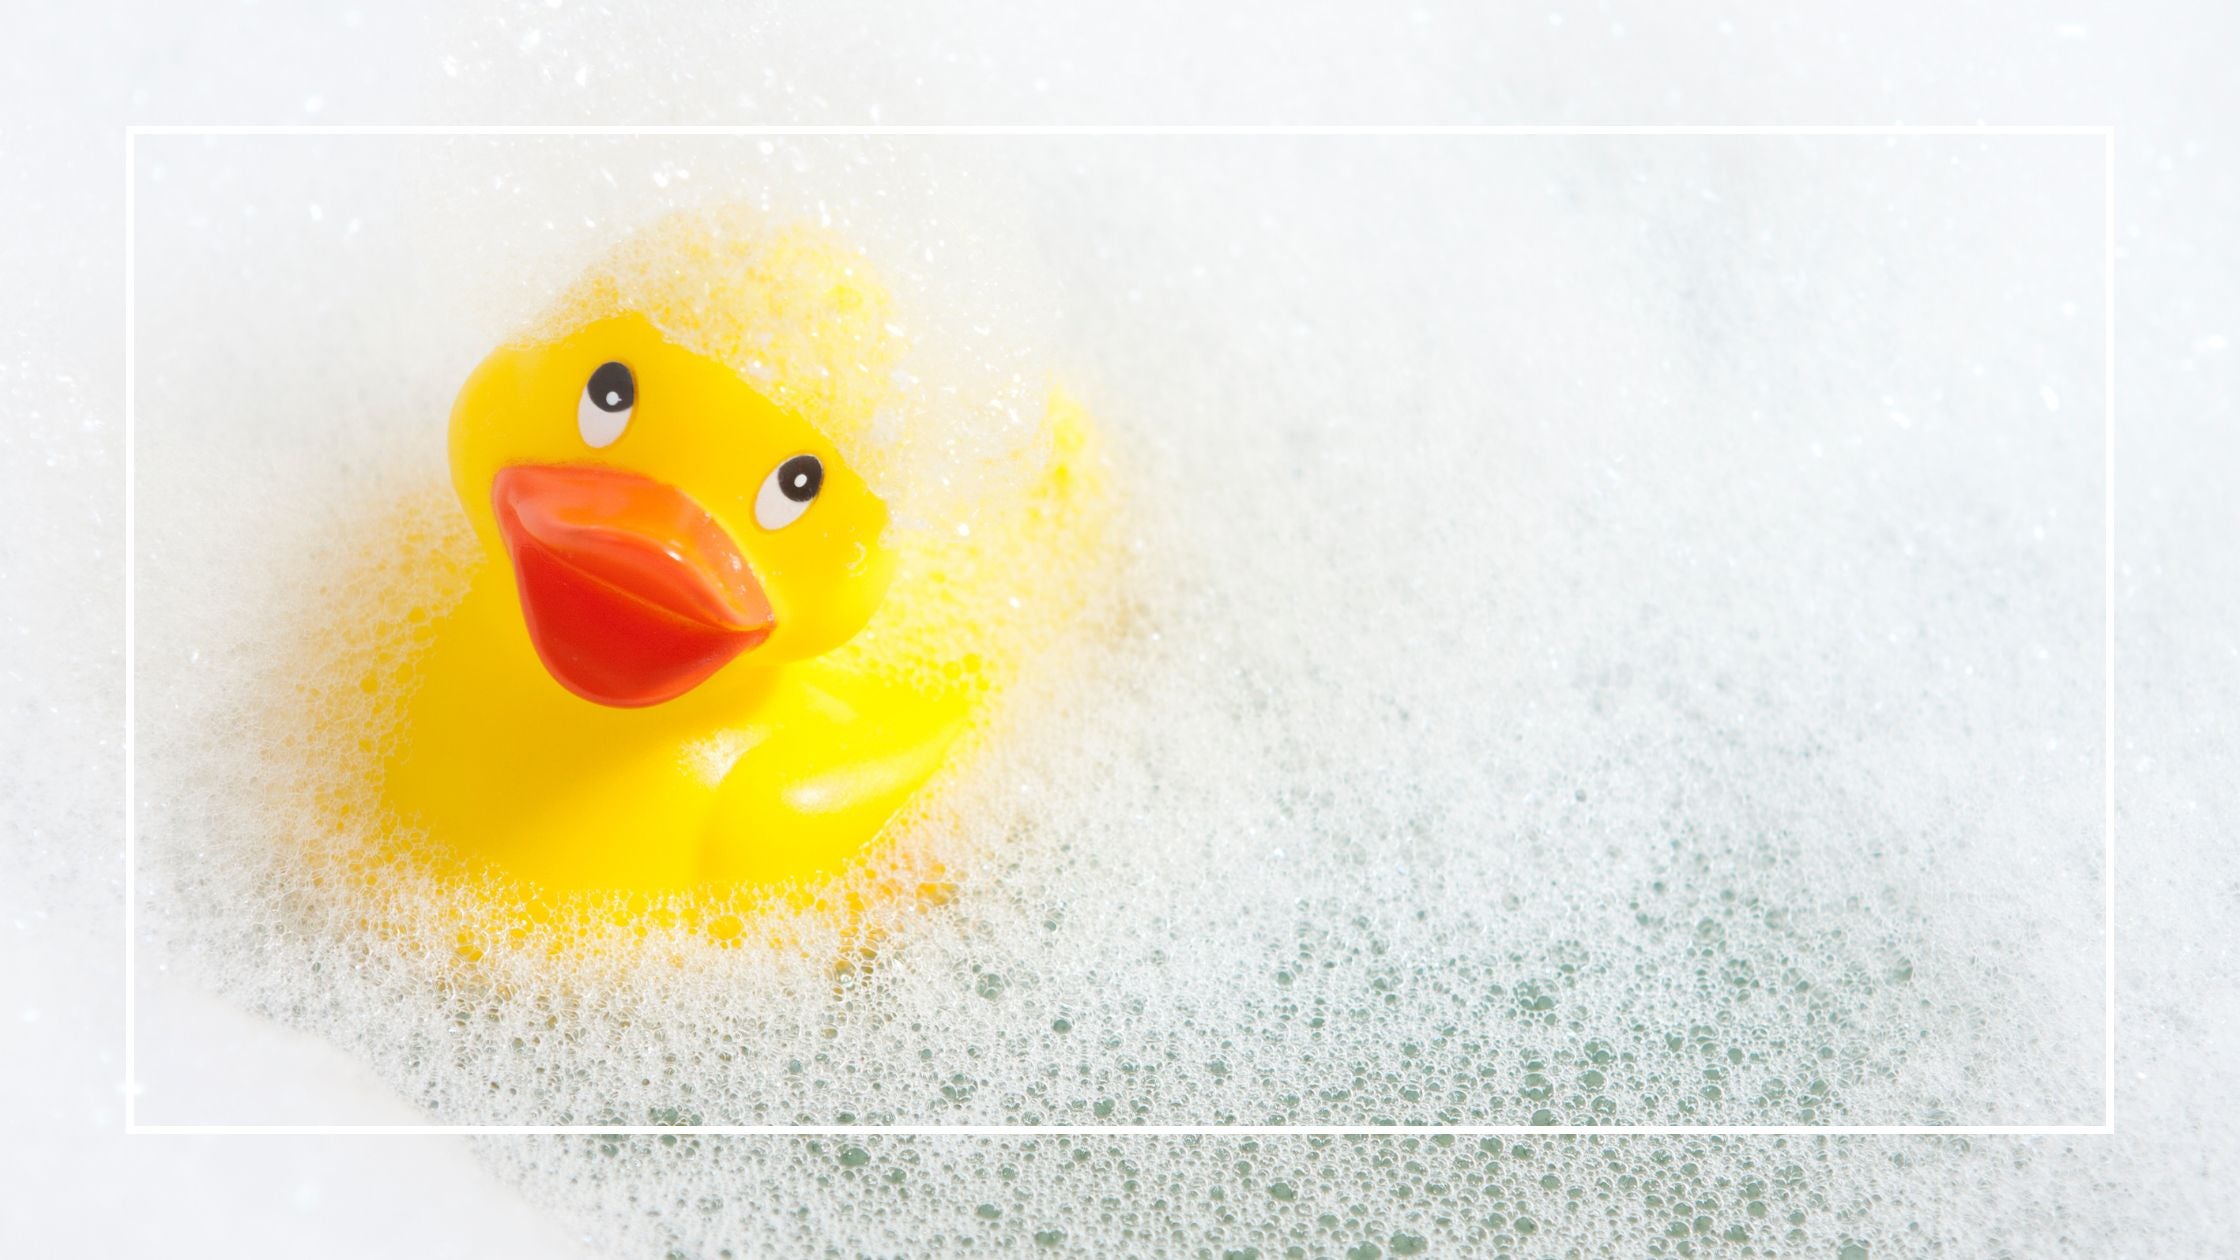 Rubber Ducky in Bathtub